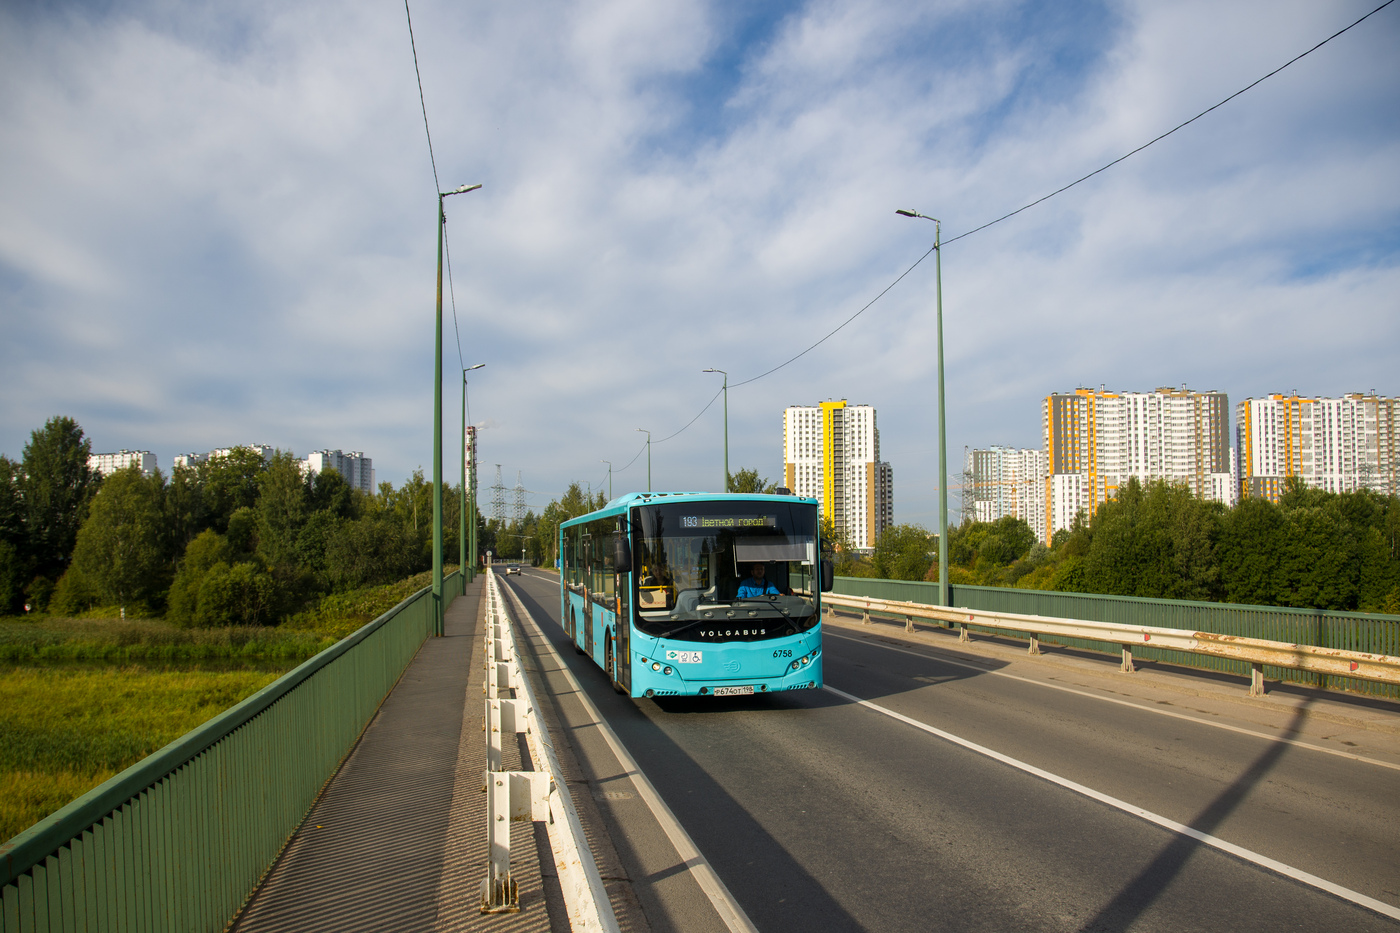 Szentpétervár, Volgabus-5270.G2 (LNG) sz.: 6758